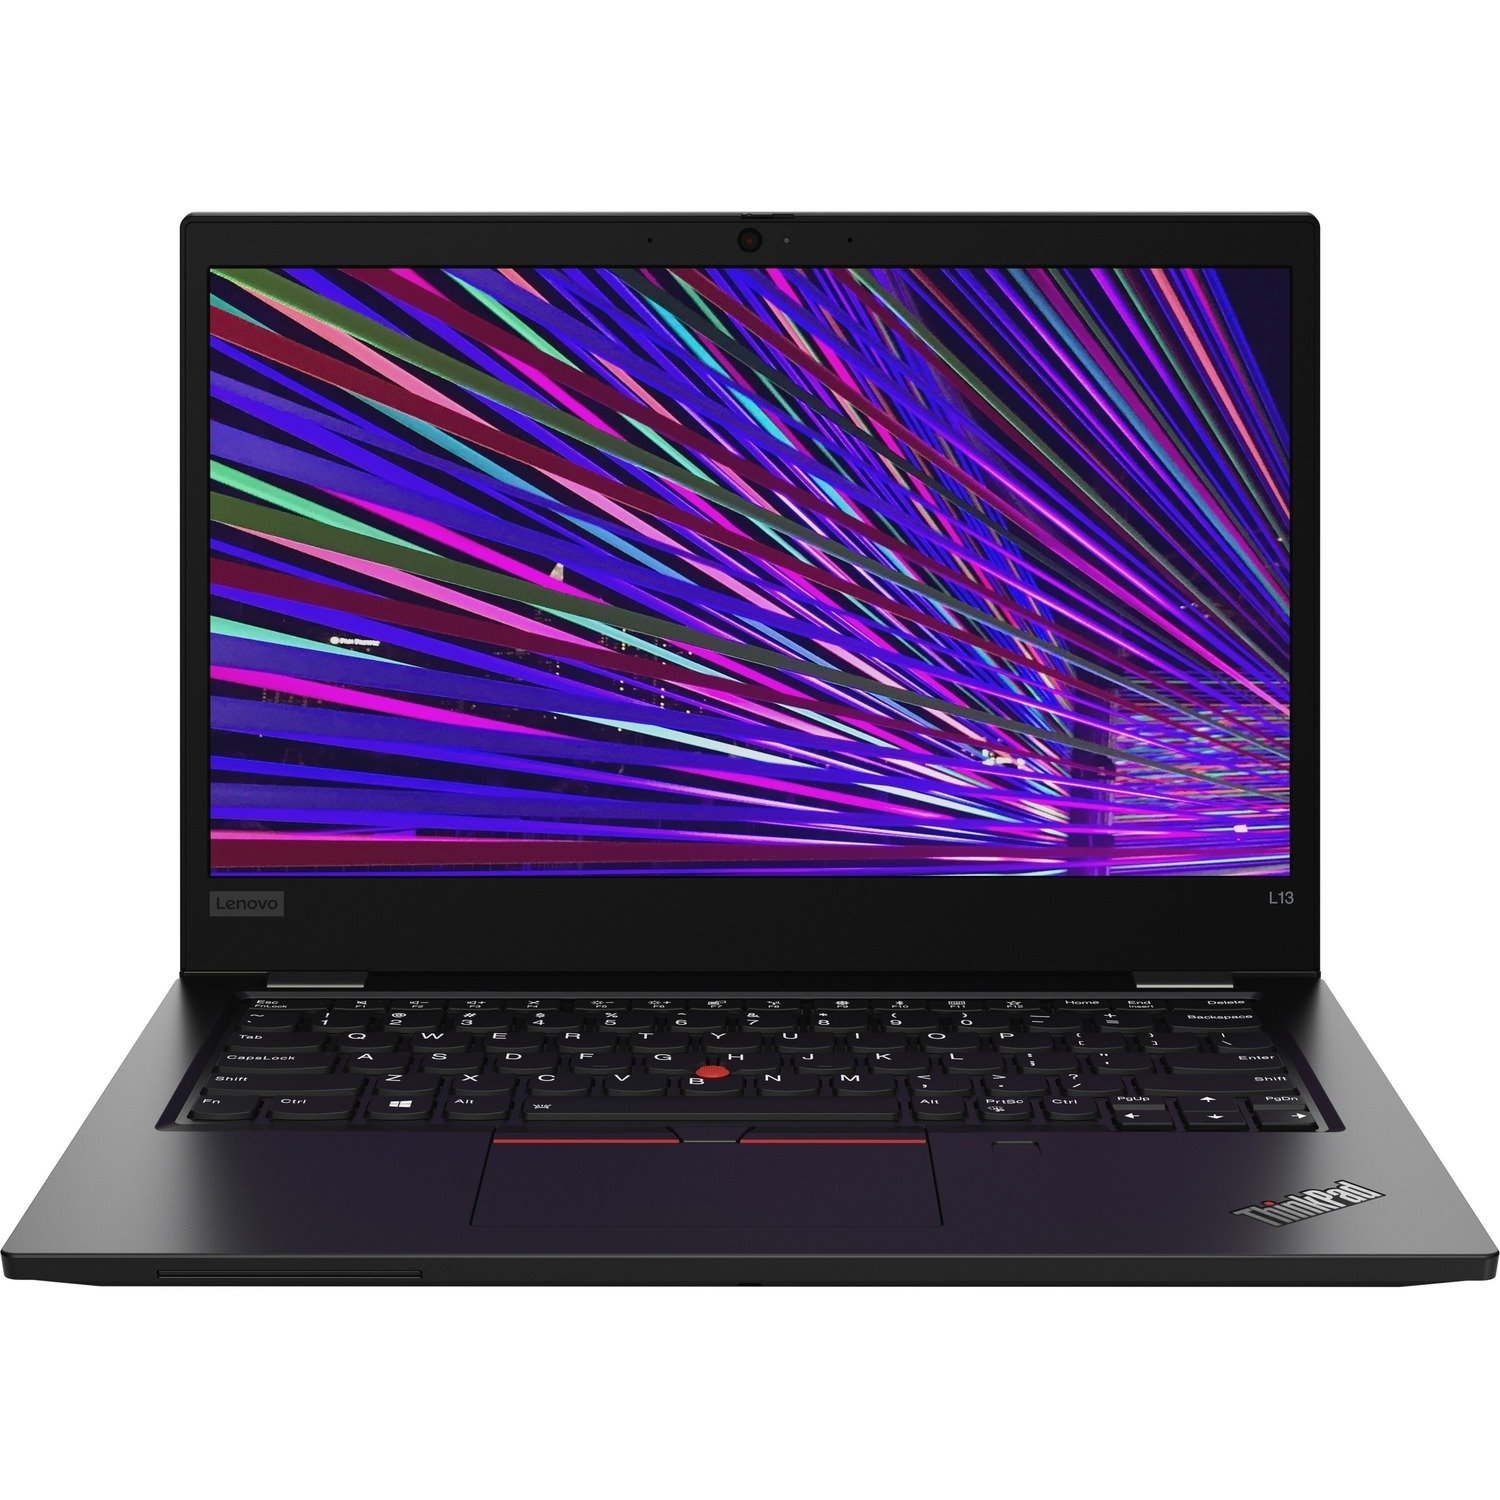 Lenovo ThinkPad L13 20R3003FUS 13.3" Notebook - Full HD - 1920 x 1080 - Intel Core i5 10th Gen i5-10210U Quad-core (4 Core) 1.60 GHz - 8 GB Total RAM - 256 GB SSD - Black